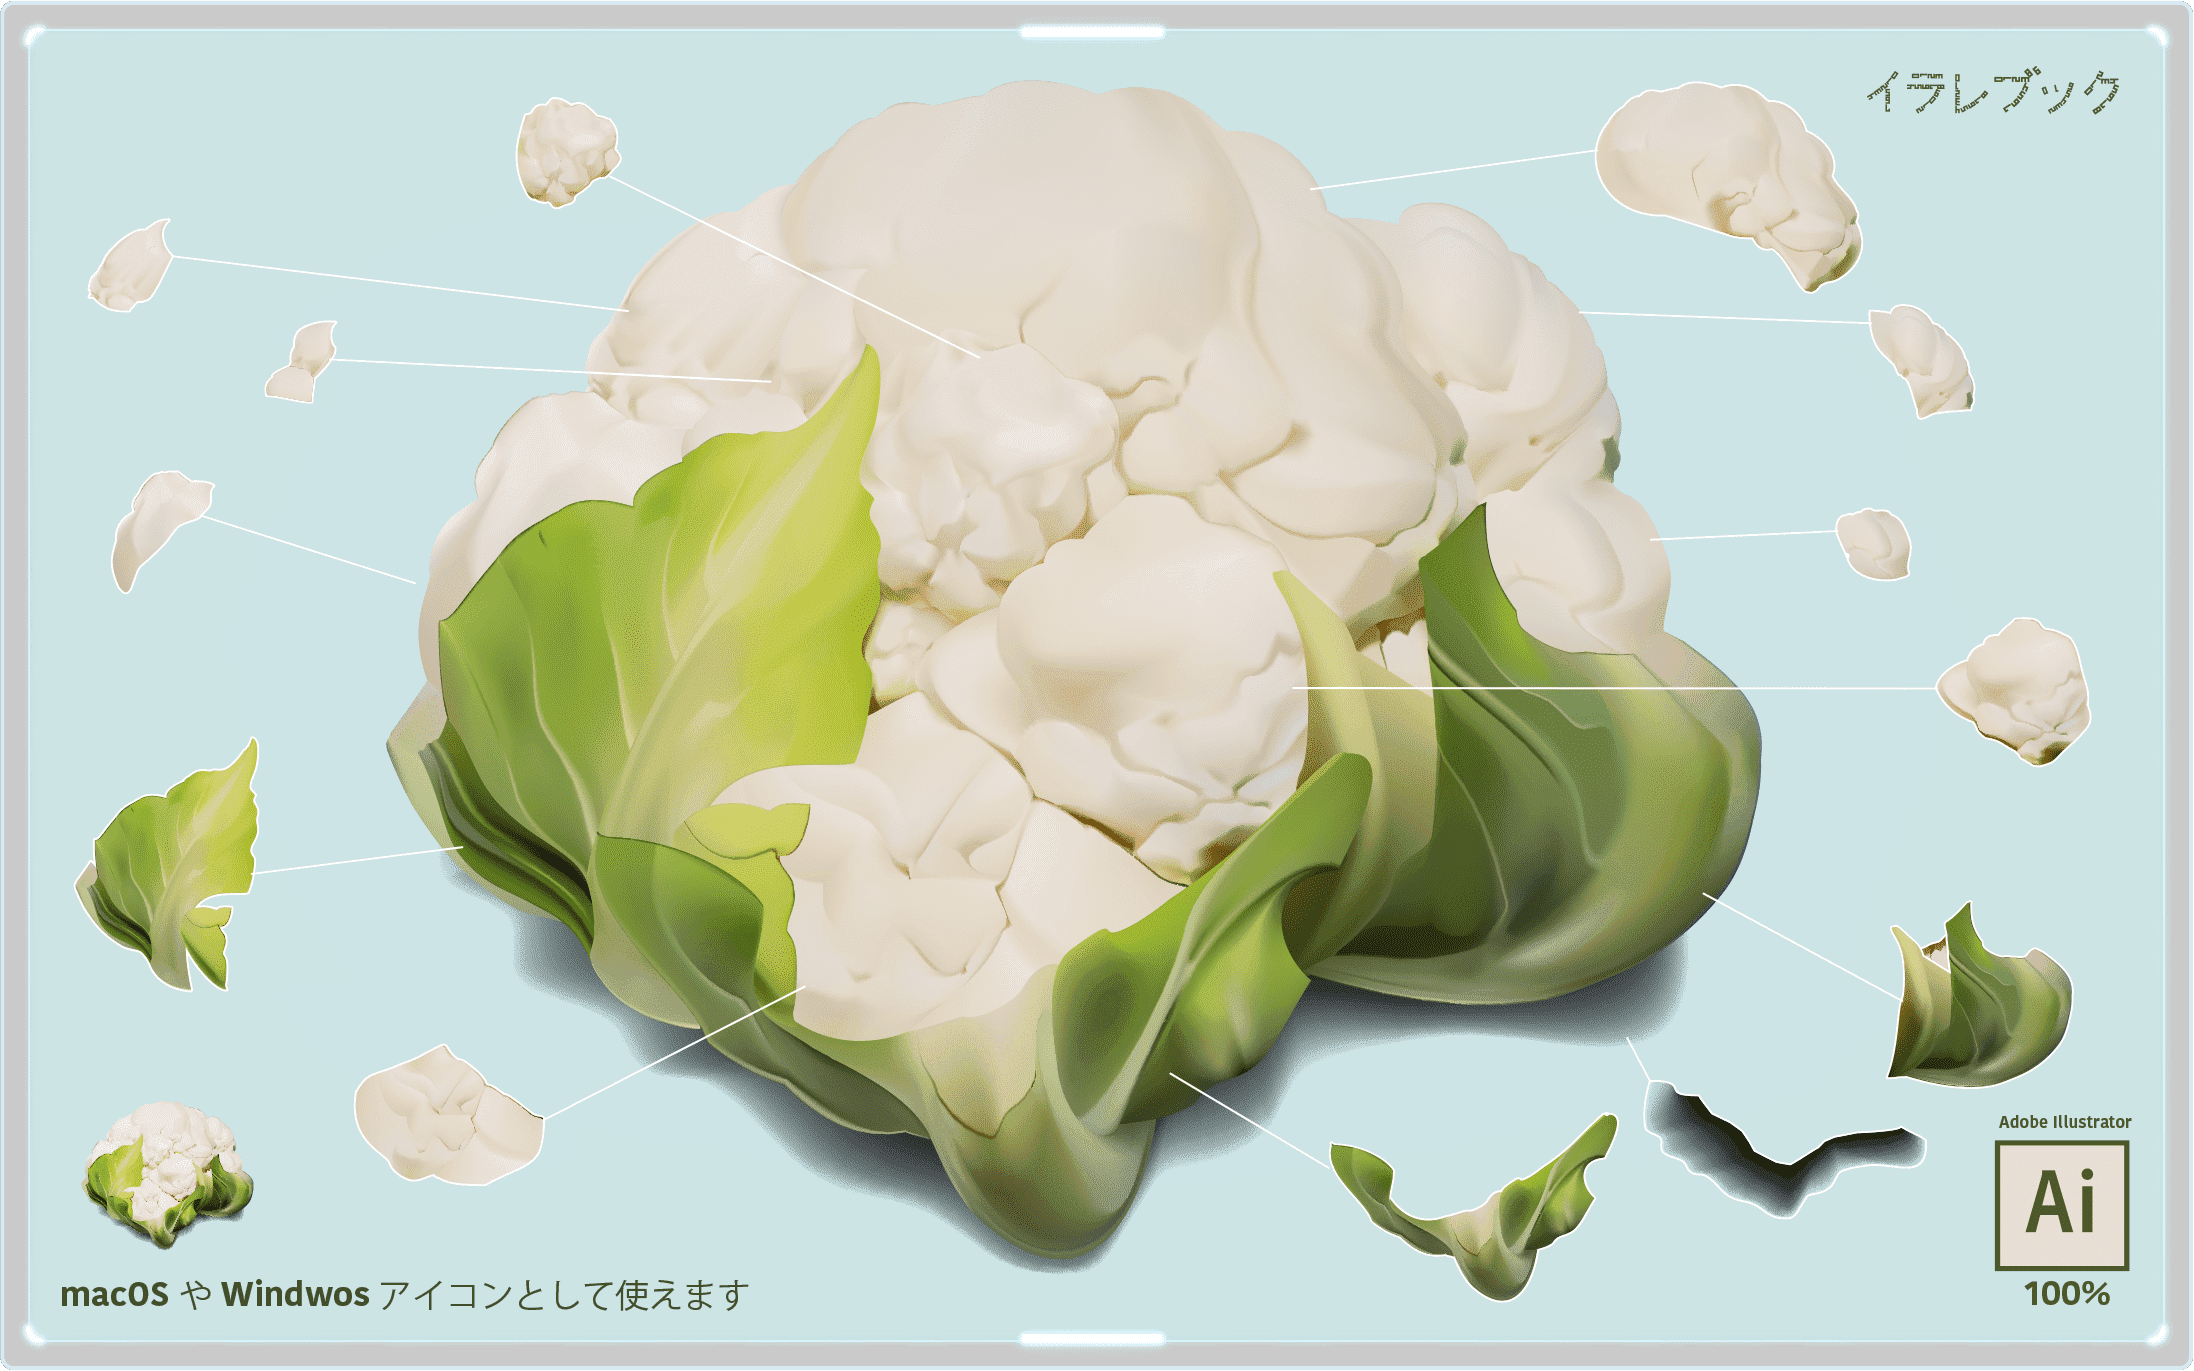 カリフラワー イラスト ブロッコリーの弟 栄養や食べ方 選び方 描き方